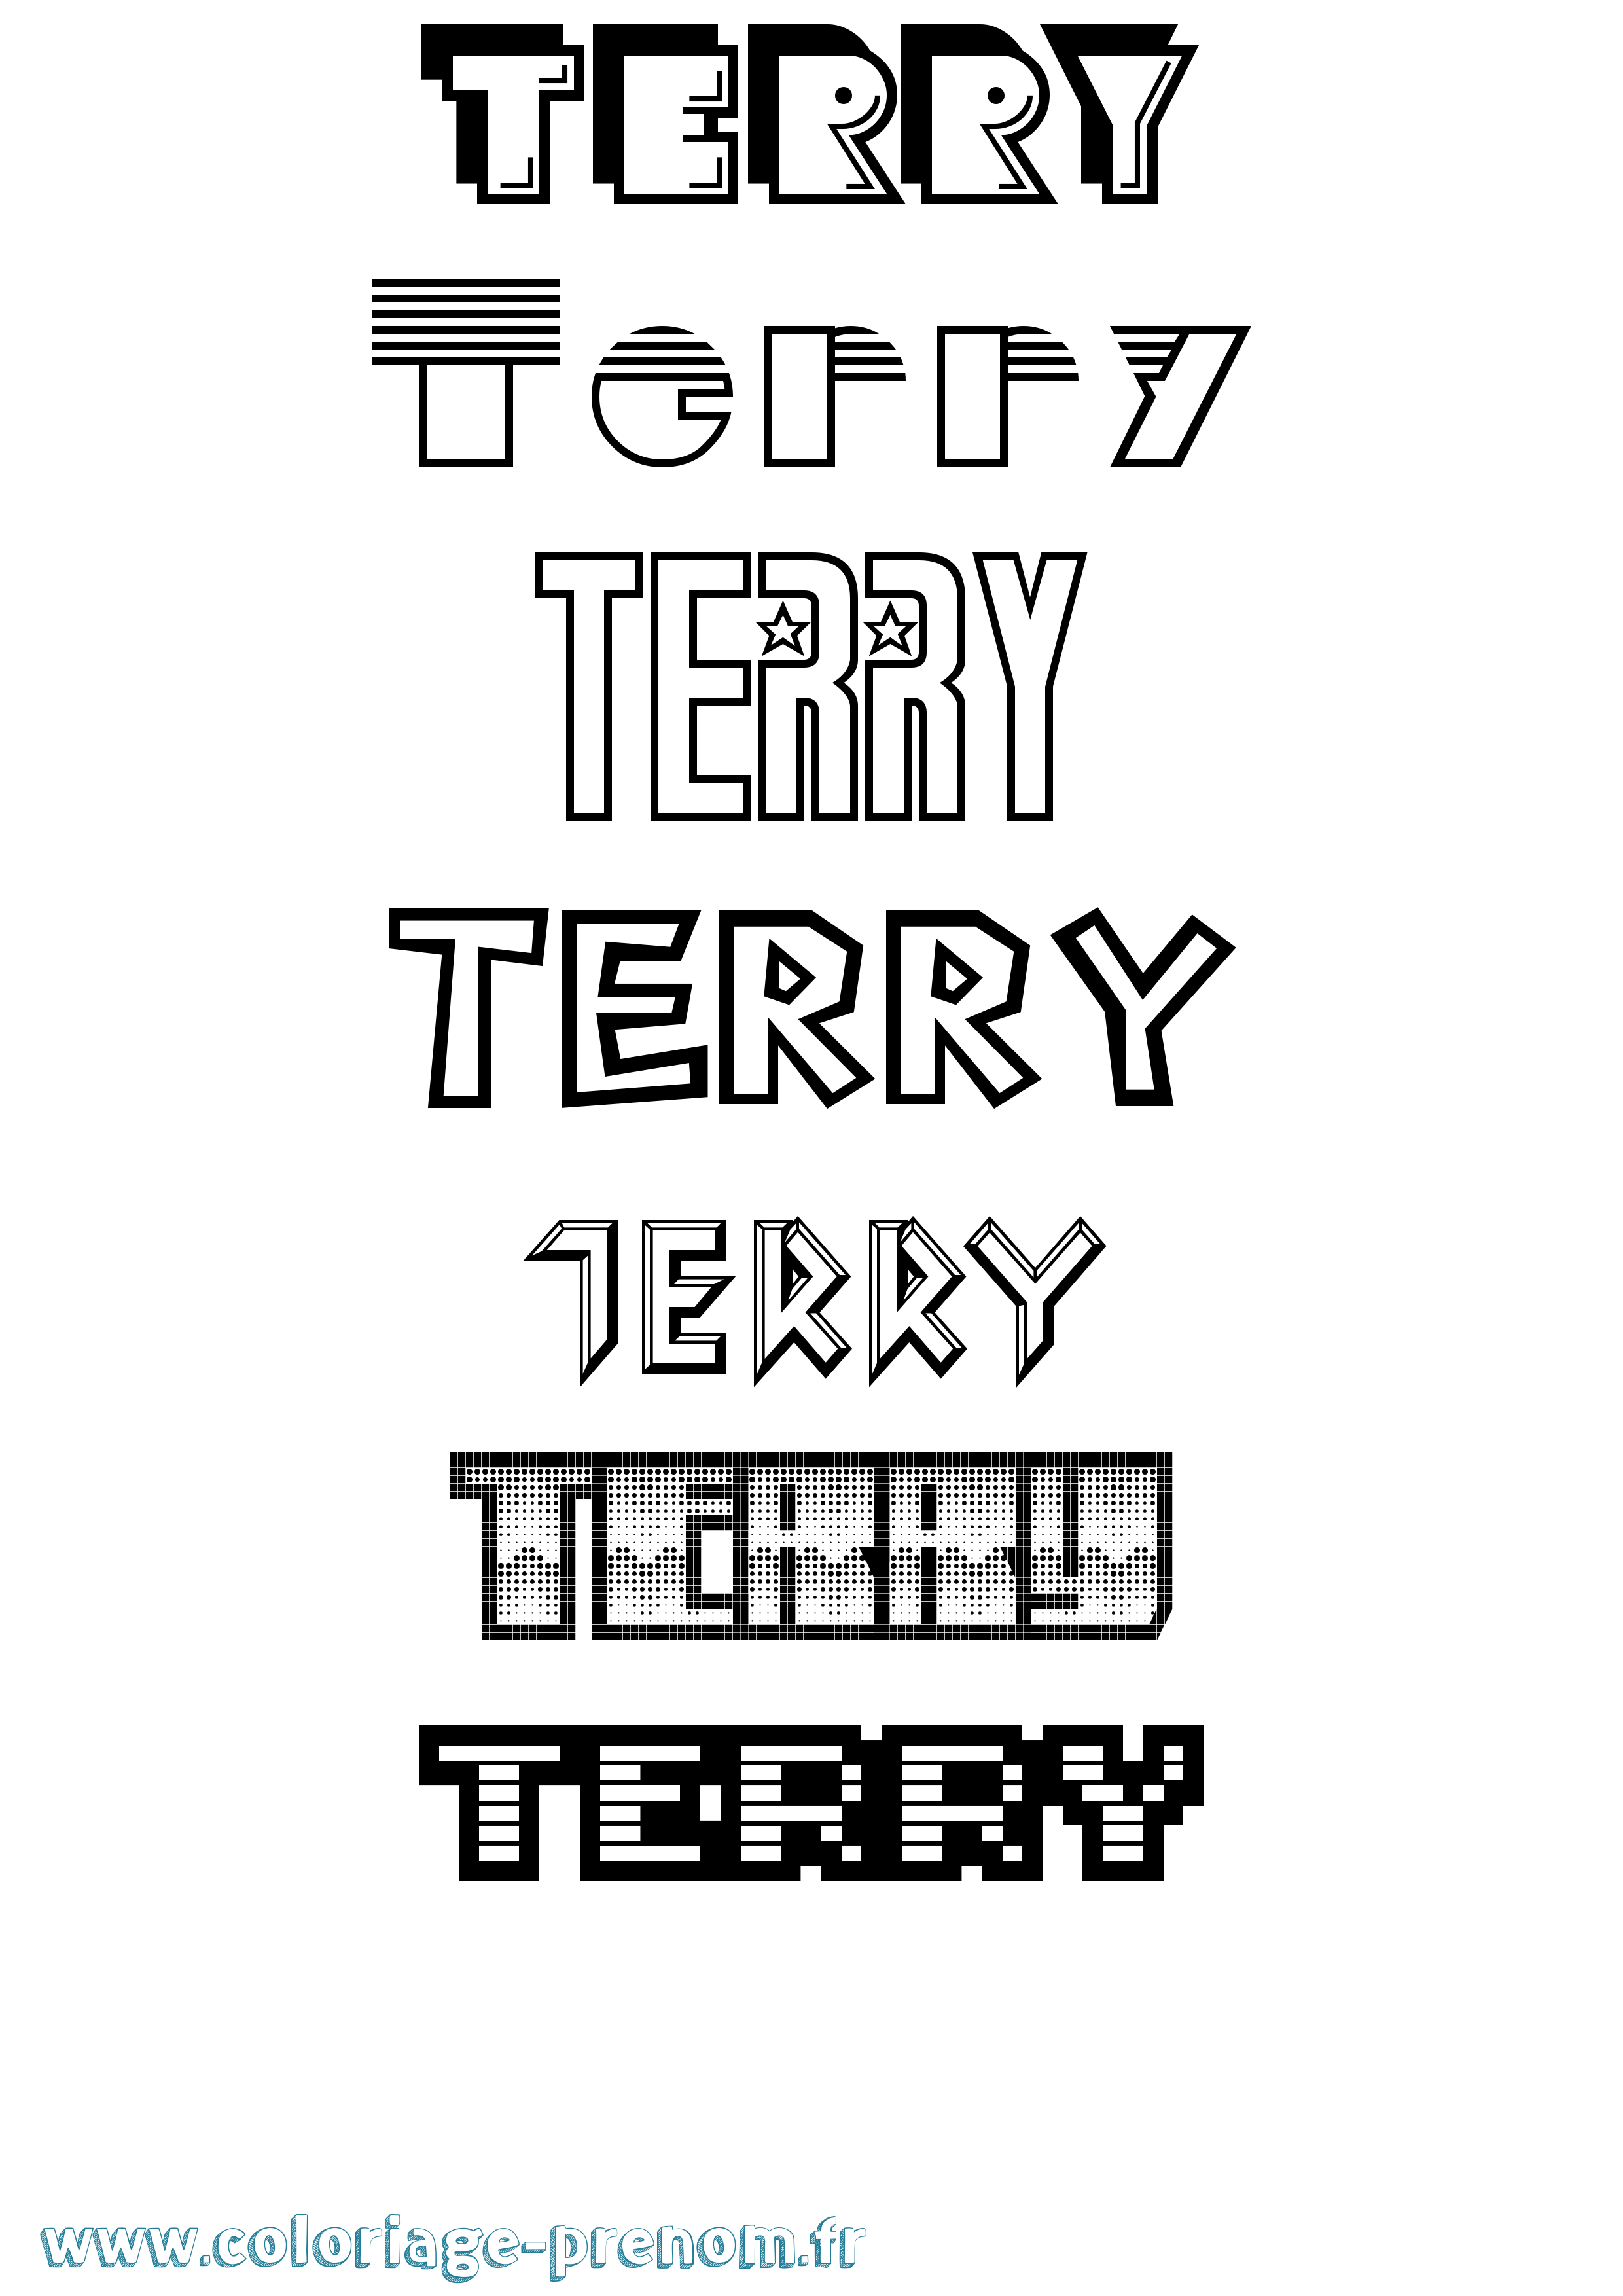 Coloriage prénom Terry Jeux Vidéos